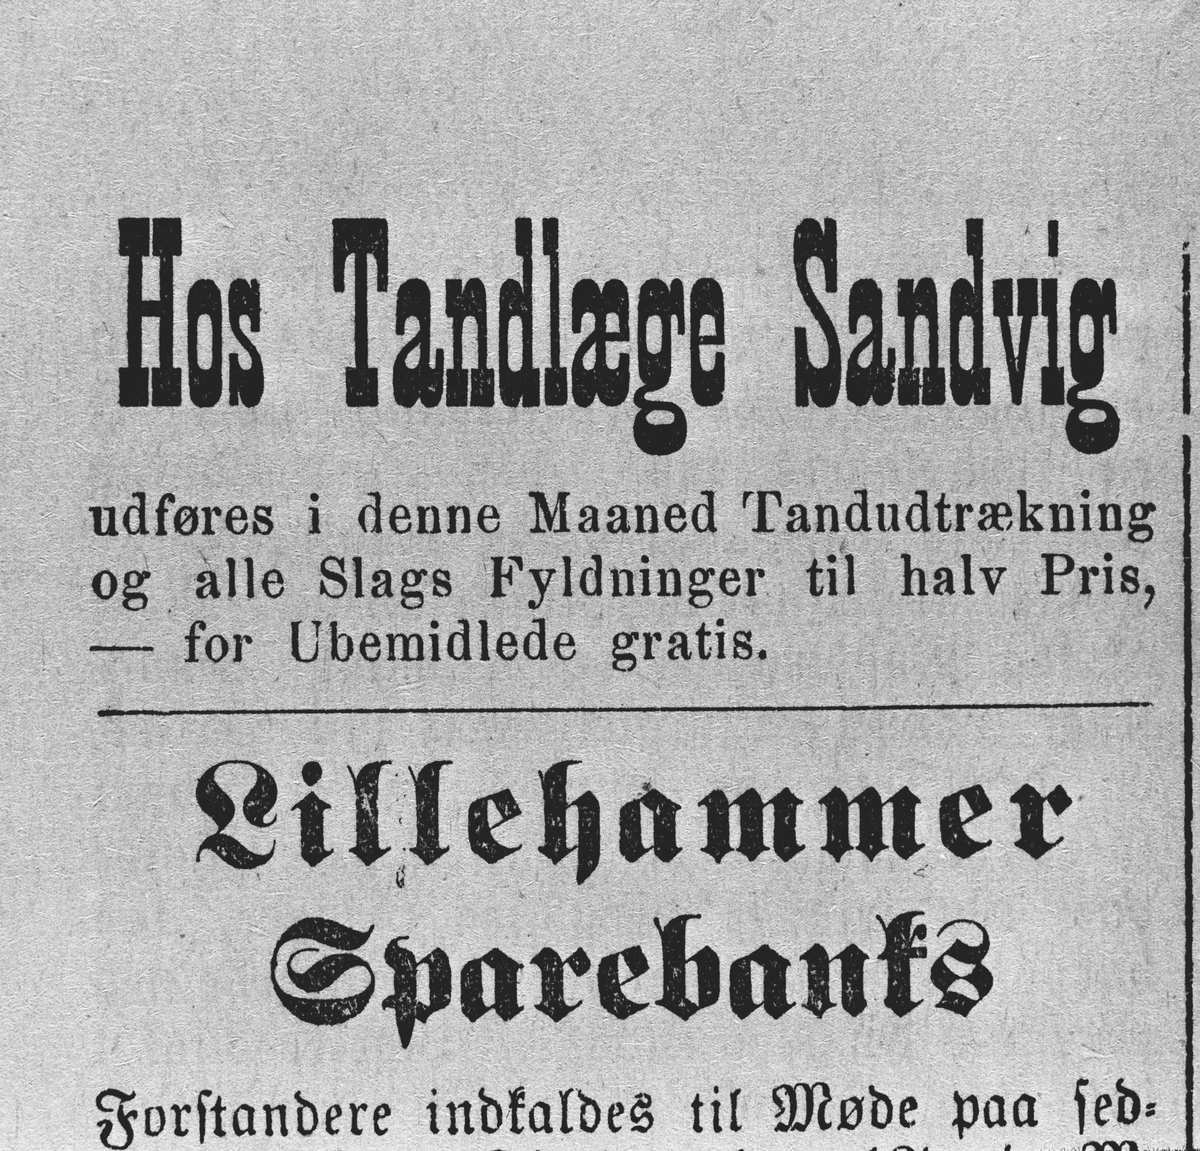 Annonser 1880-95, Sandvigs tannlegepraksis, Lillehammer Tilskuer. Viser tider og steder for behandling langs Sandvigs reiserute